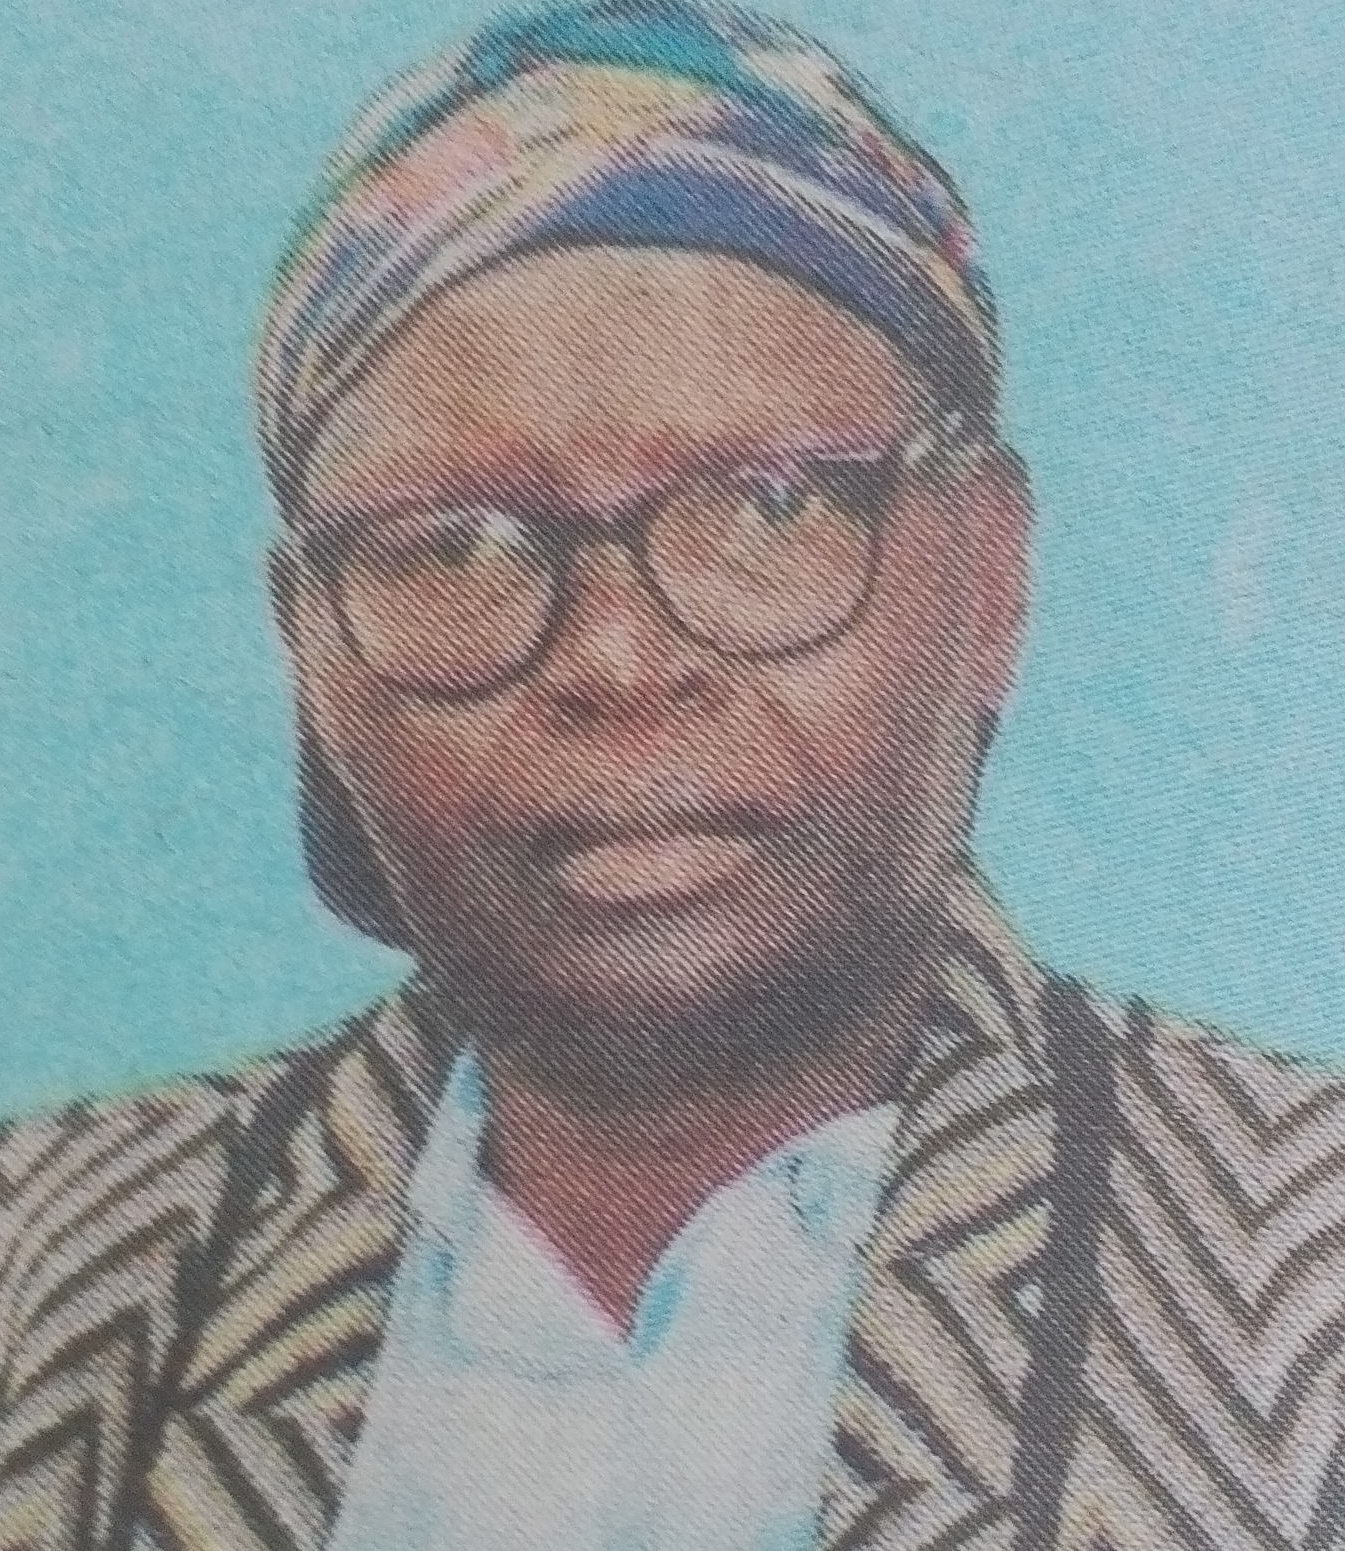 Obituary Image of Loise Kemunto Ong'era